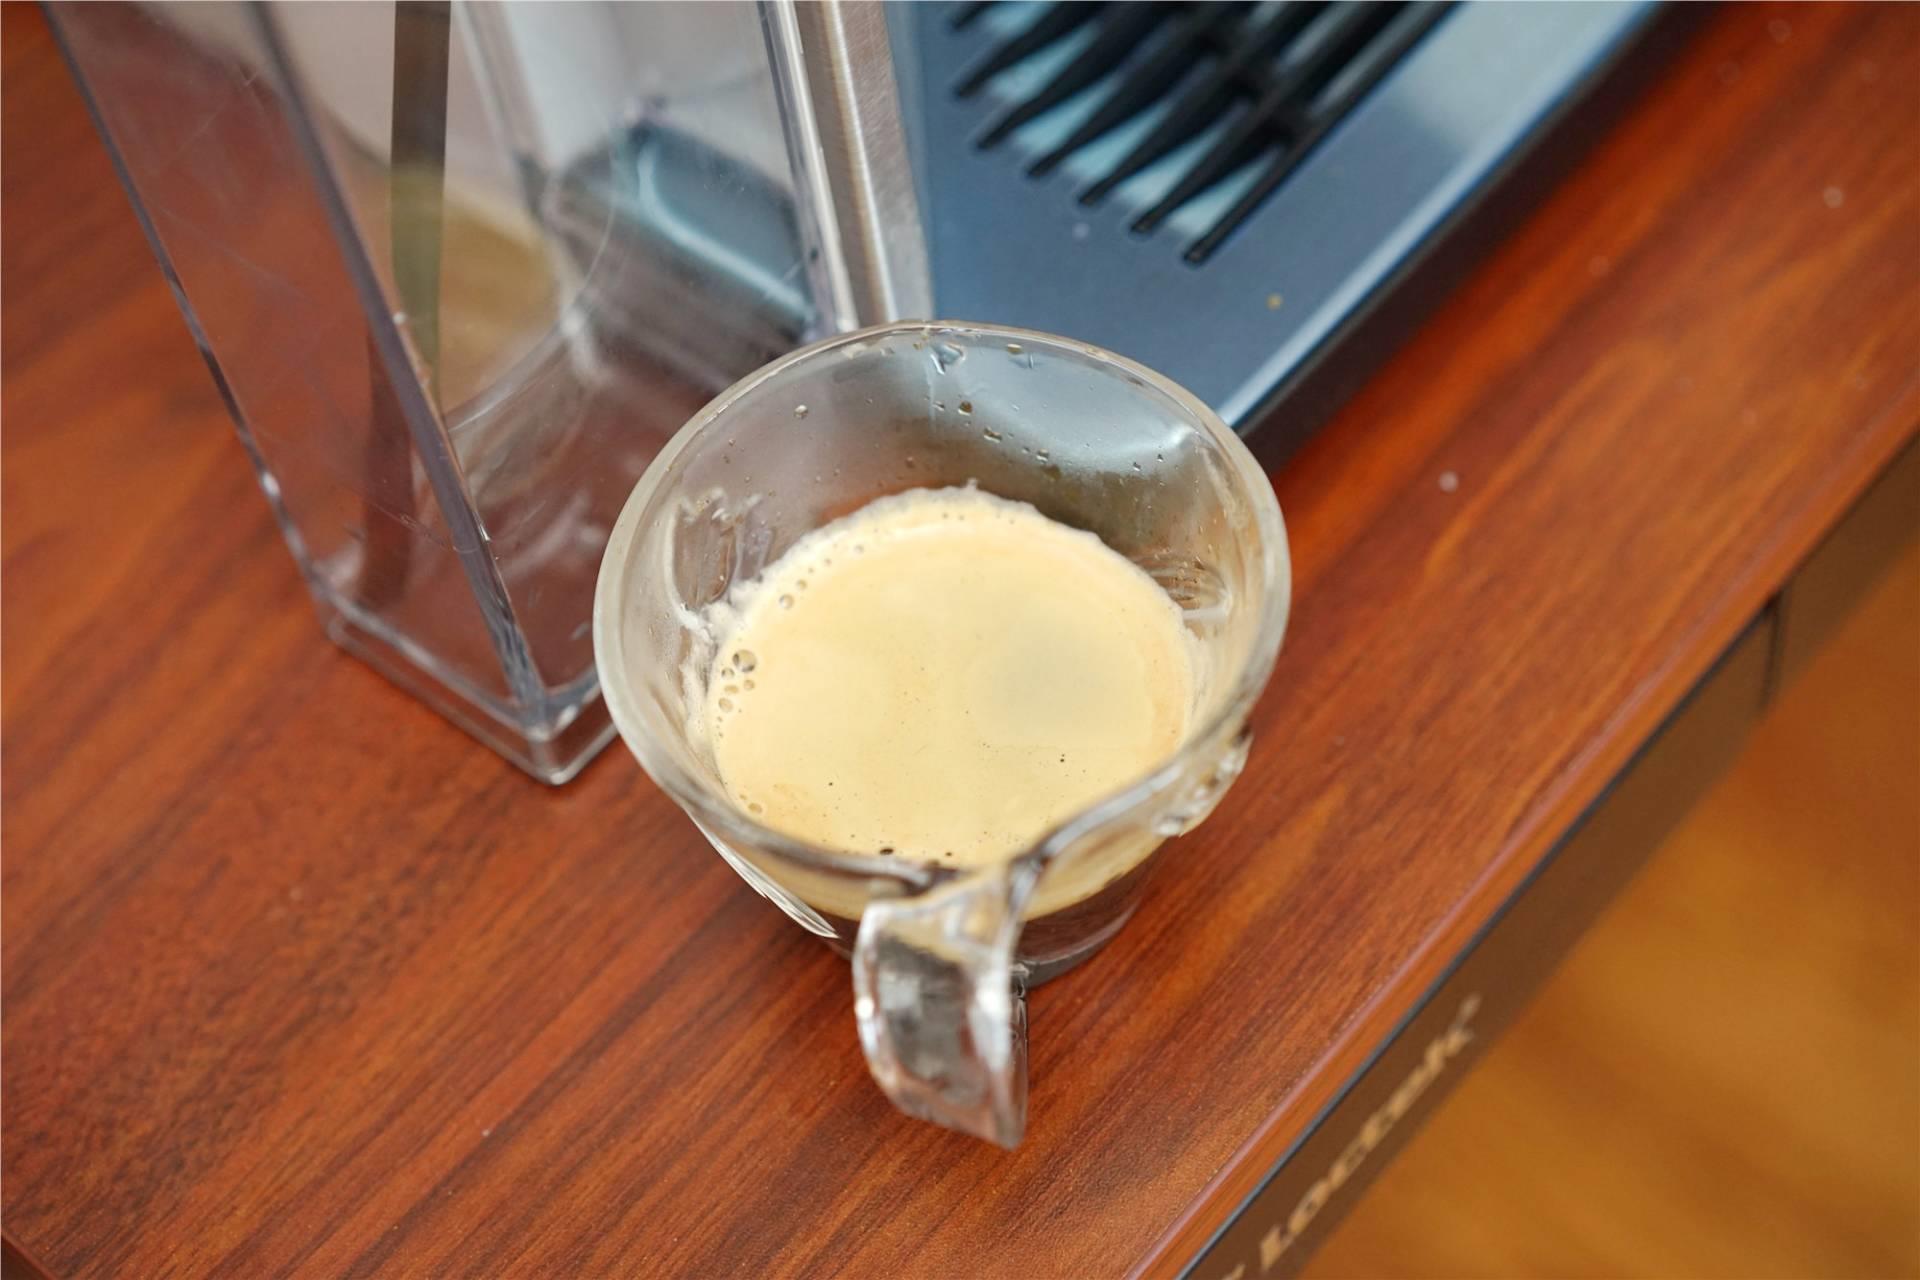 老款西门子咖啡机怎么用图解(办公室全自动咖啡机使用方法教程)